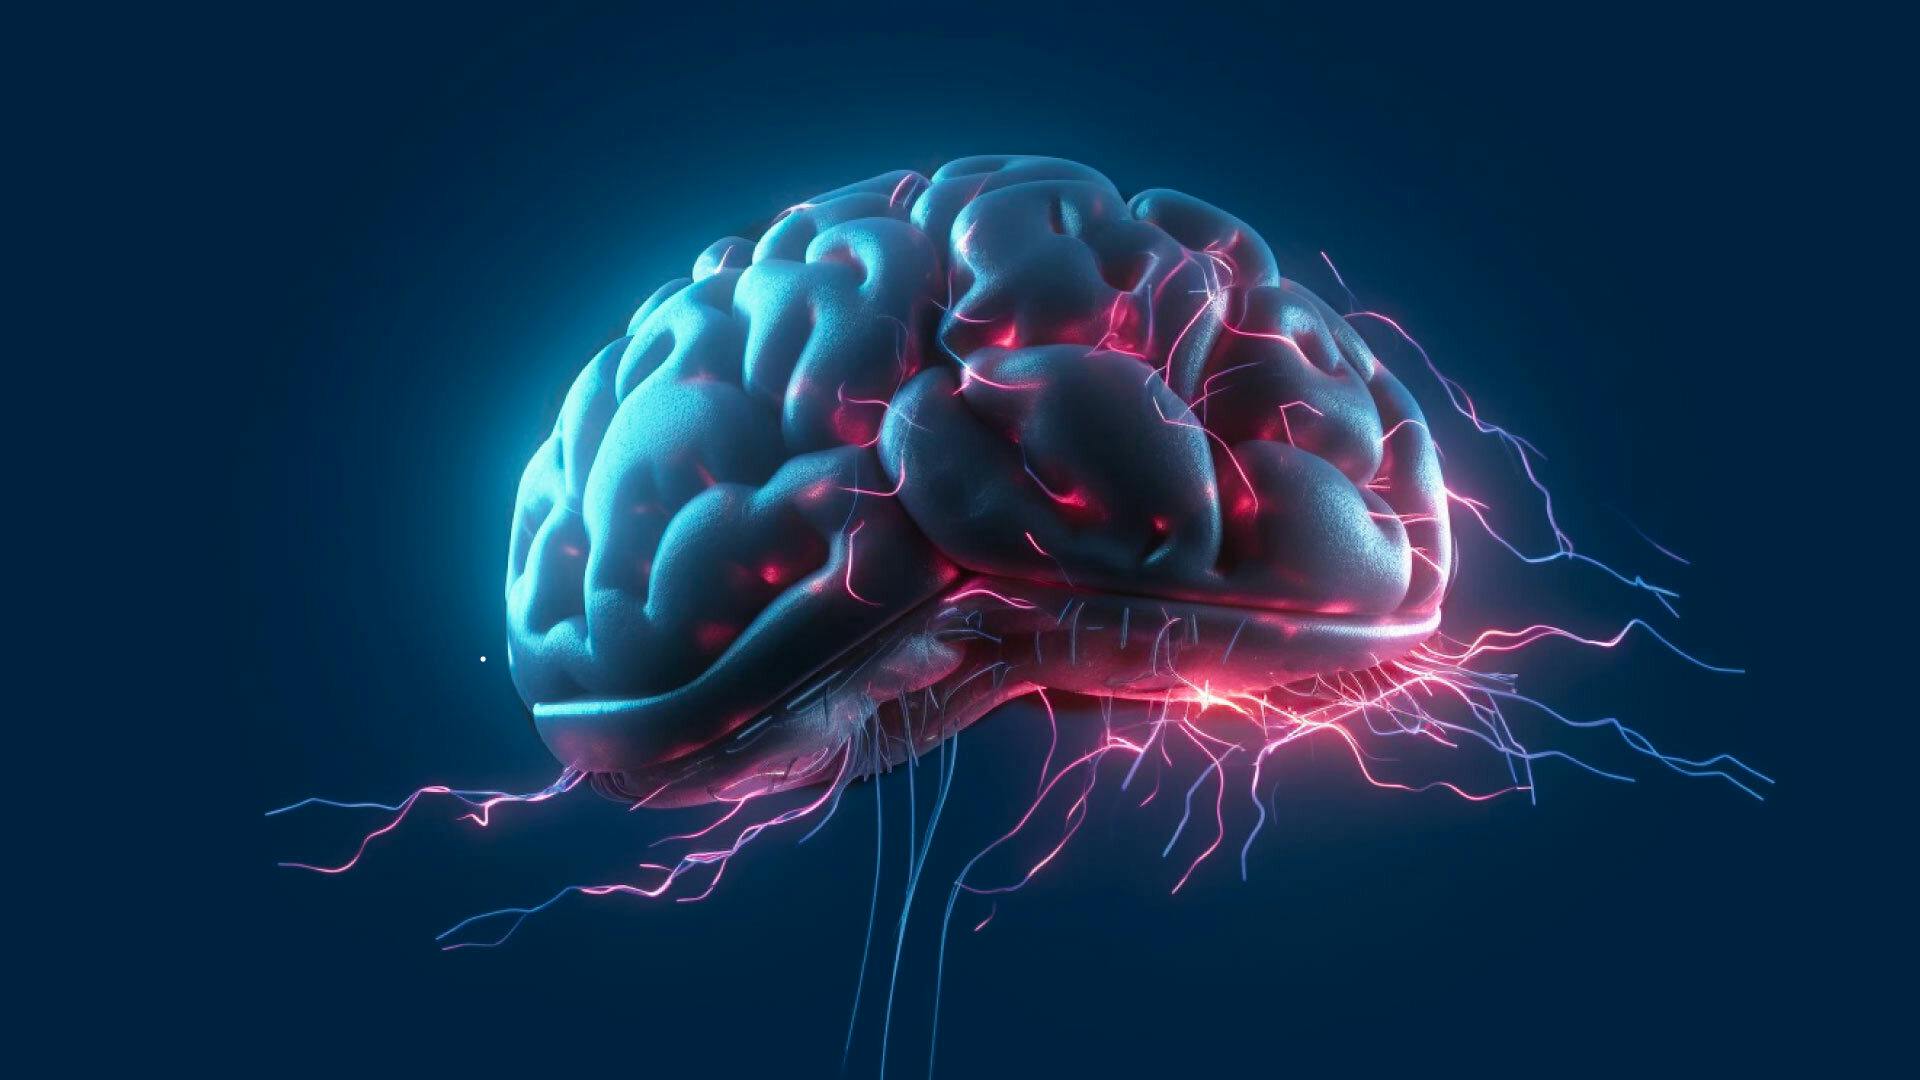 immagine olografica sci-fi di un cervello